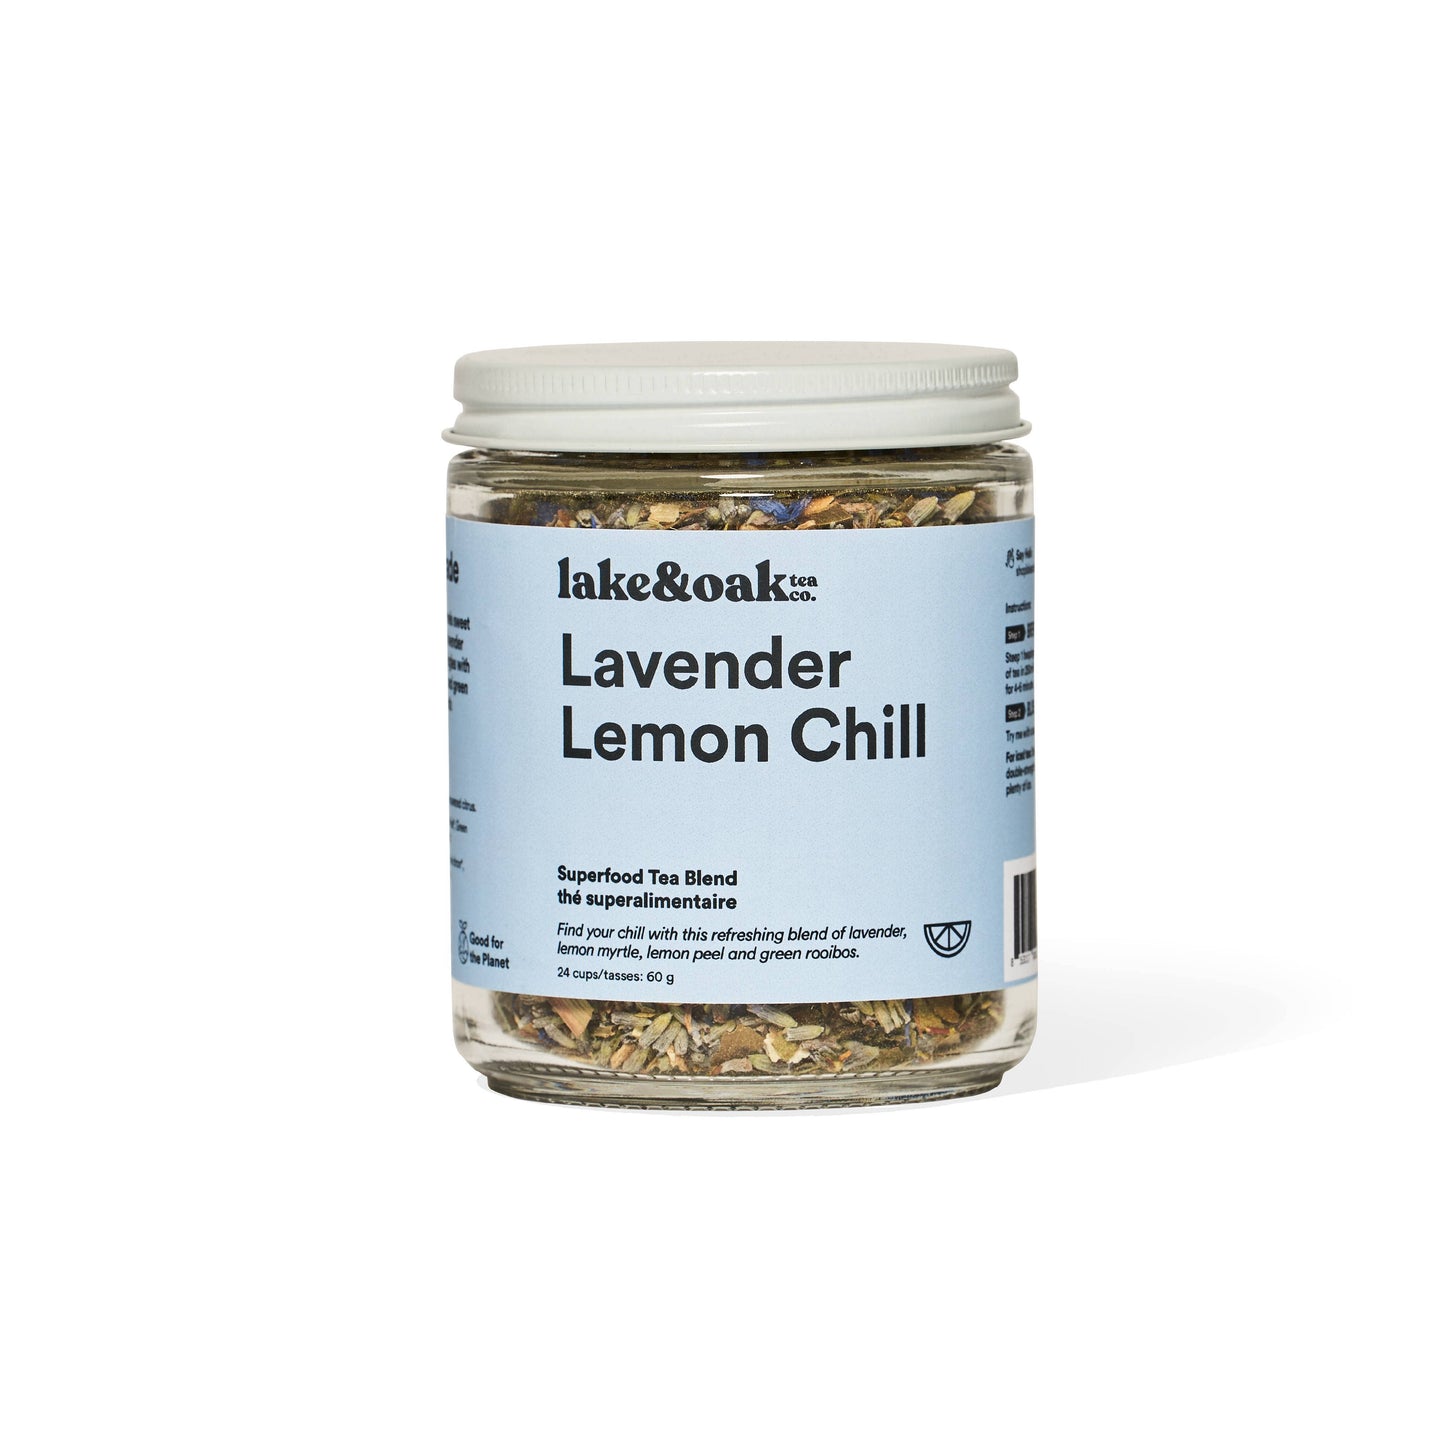 Lake & Oak Tea Co. - Lavender Lemon Chill - Superfood Tea Blend